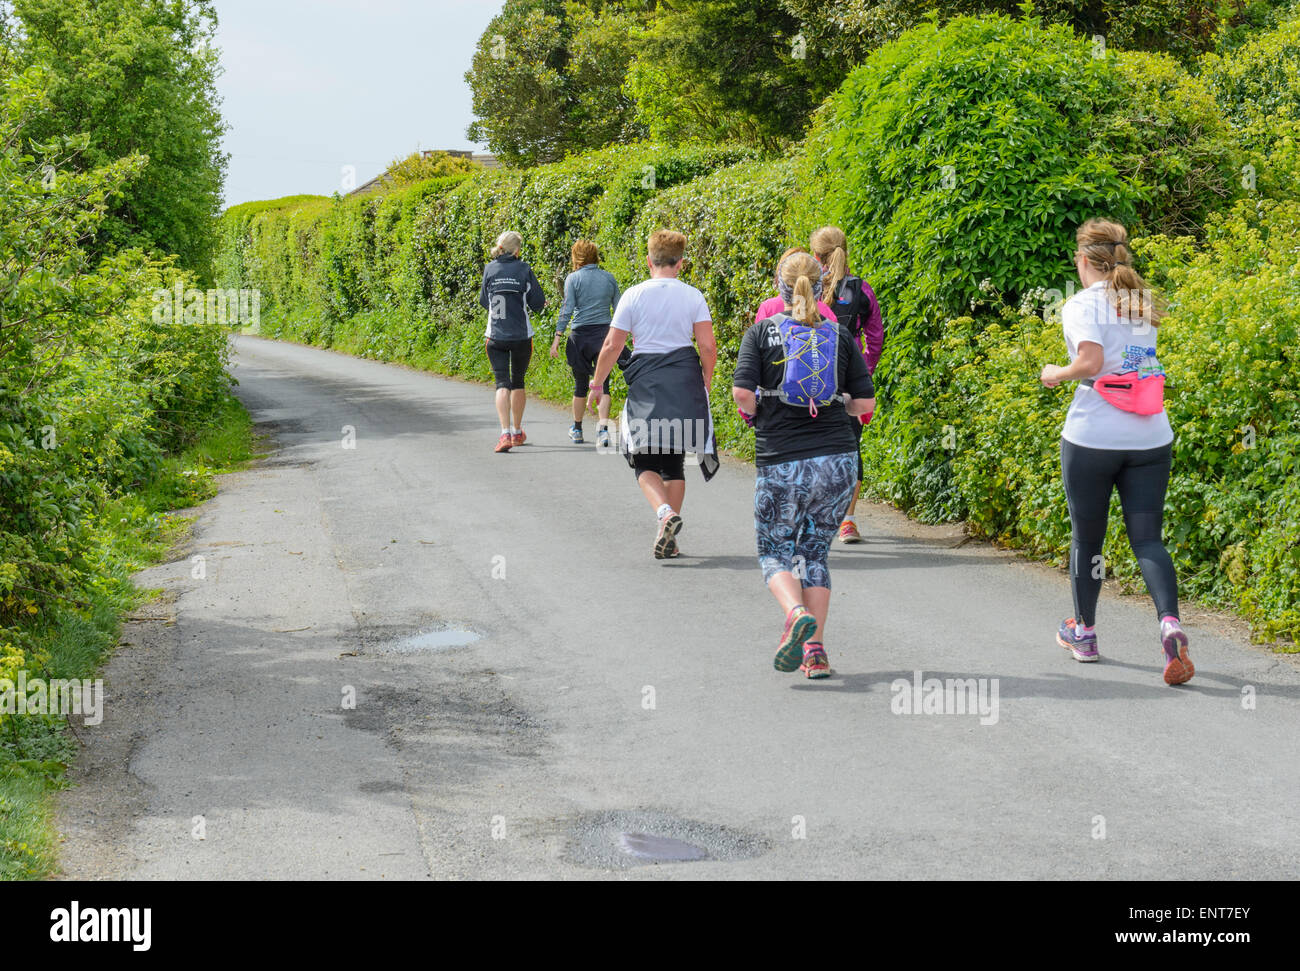 Un pequeño grupo de gente haciendo footing en un país por carretera. Foto de stock